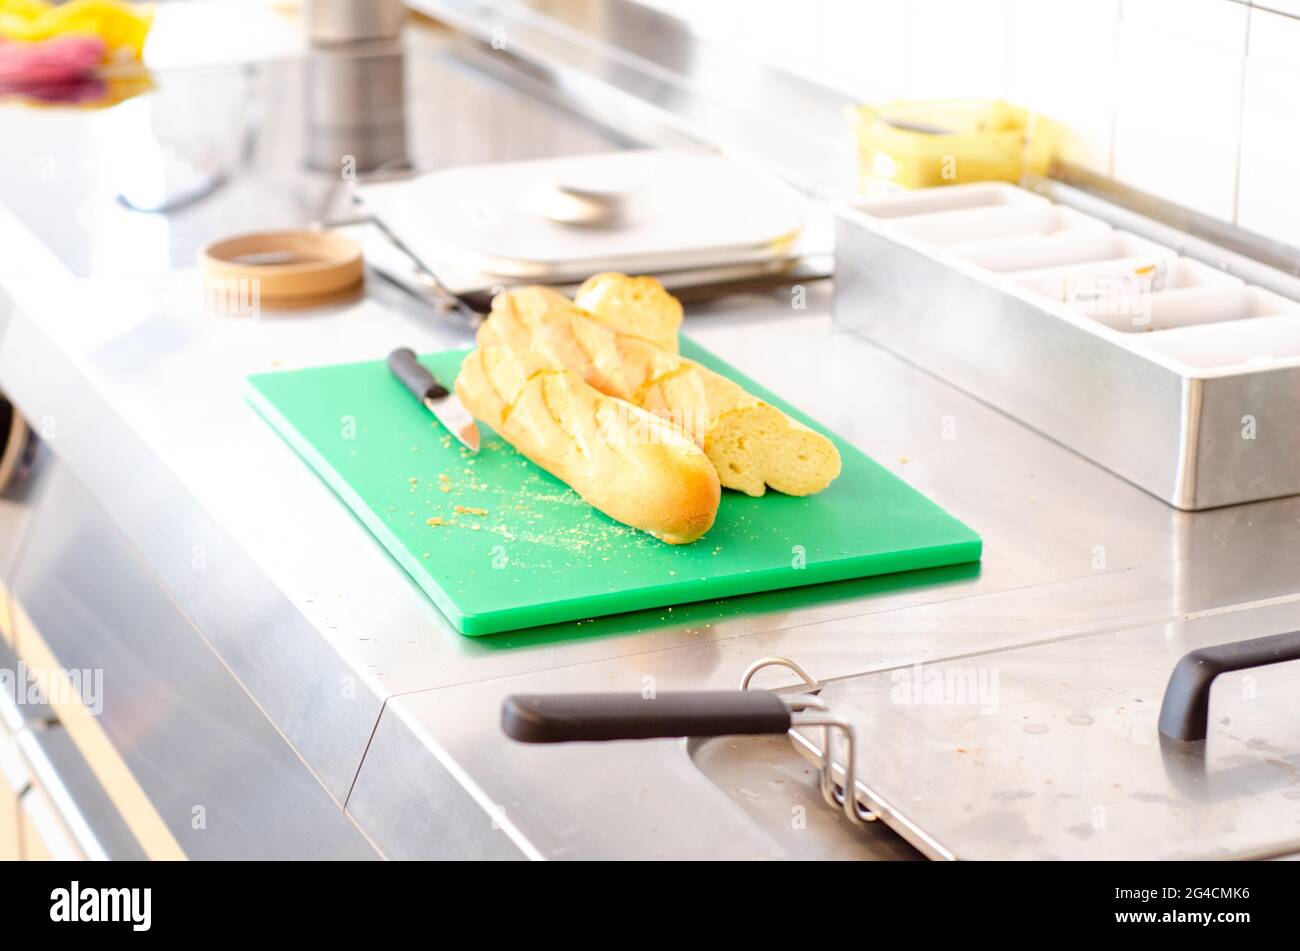 Ein Blick auf geschnittenes französisches Baguette auf einem grünen Edelstahlbrett auf einem Küchentisch Stockfoto